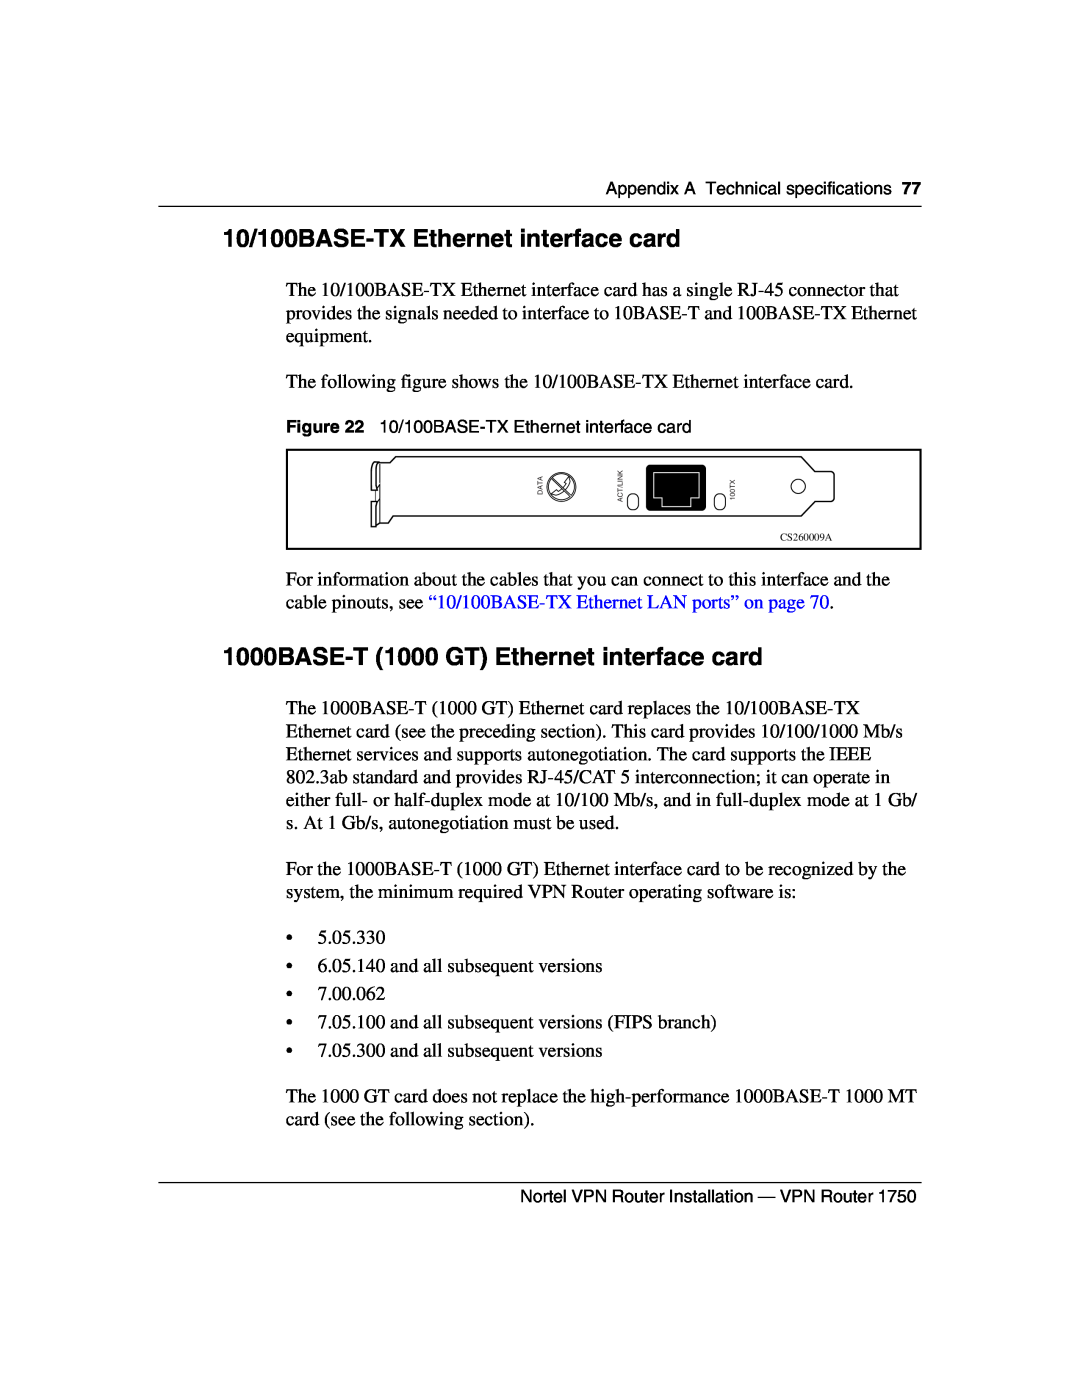 Nortel Networks 1750 manual 10/100BASE-TX Ethernet interface card, 1000BASE-T 1000 GT Ethernet interface card 